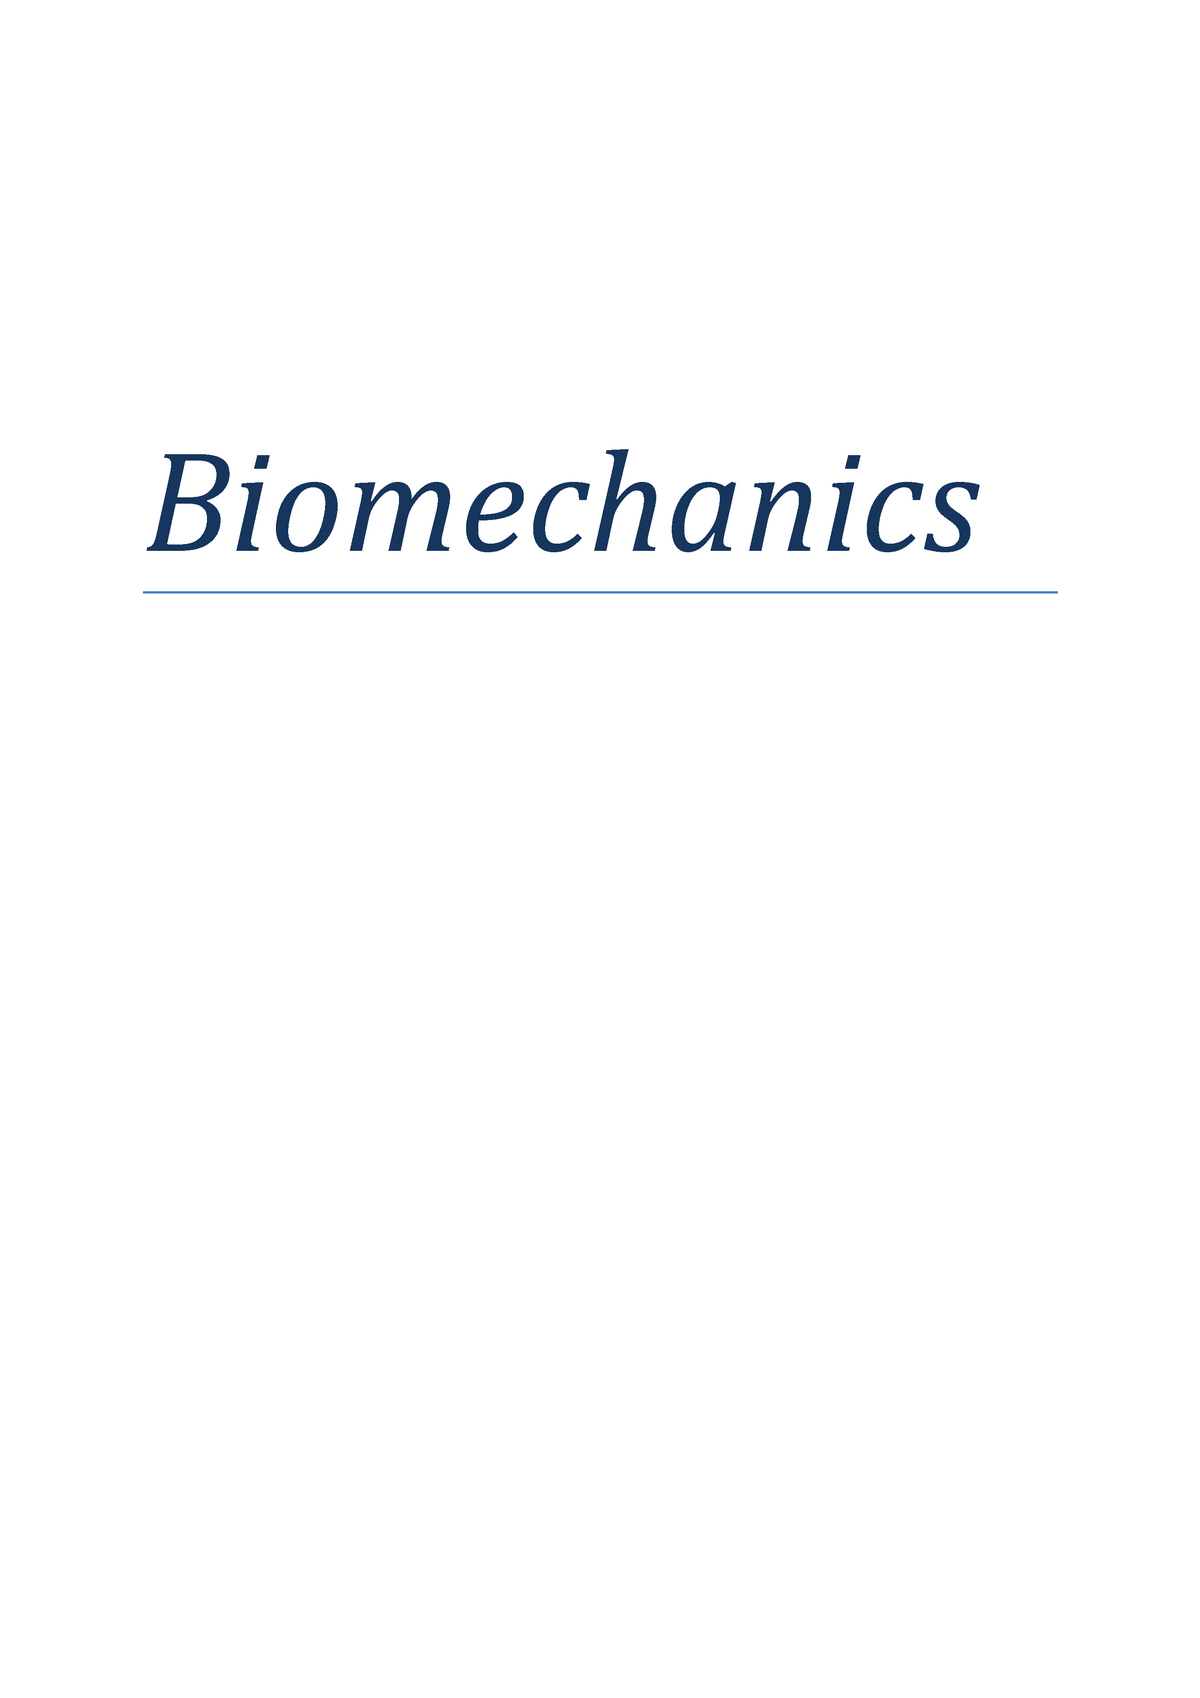 Biomechanics homework help